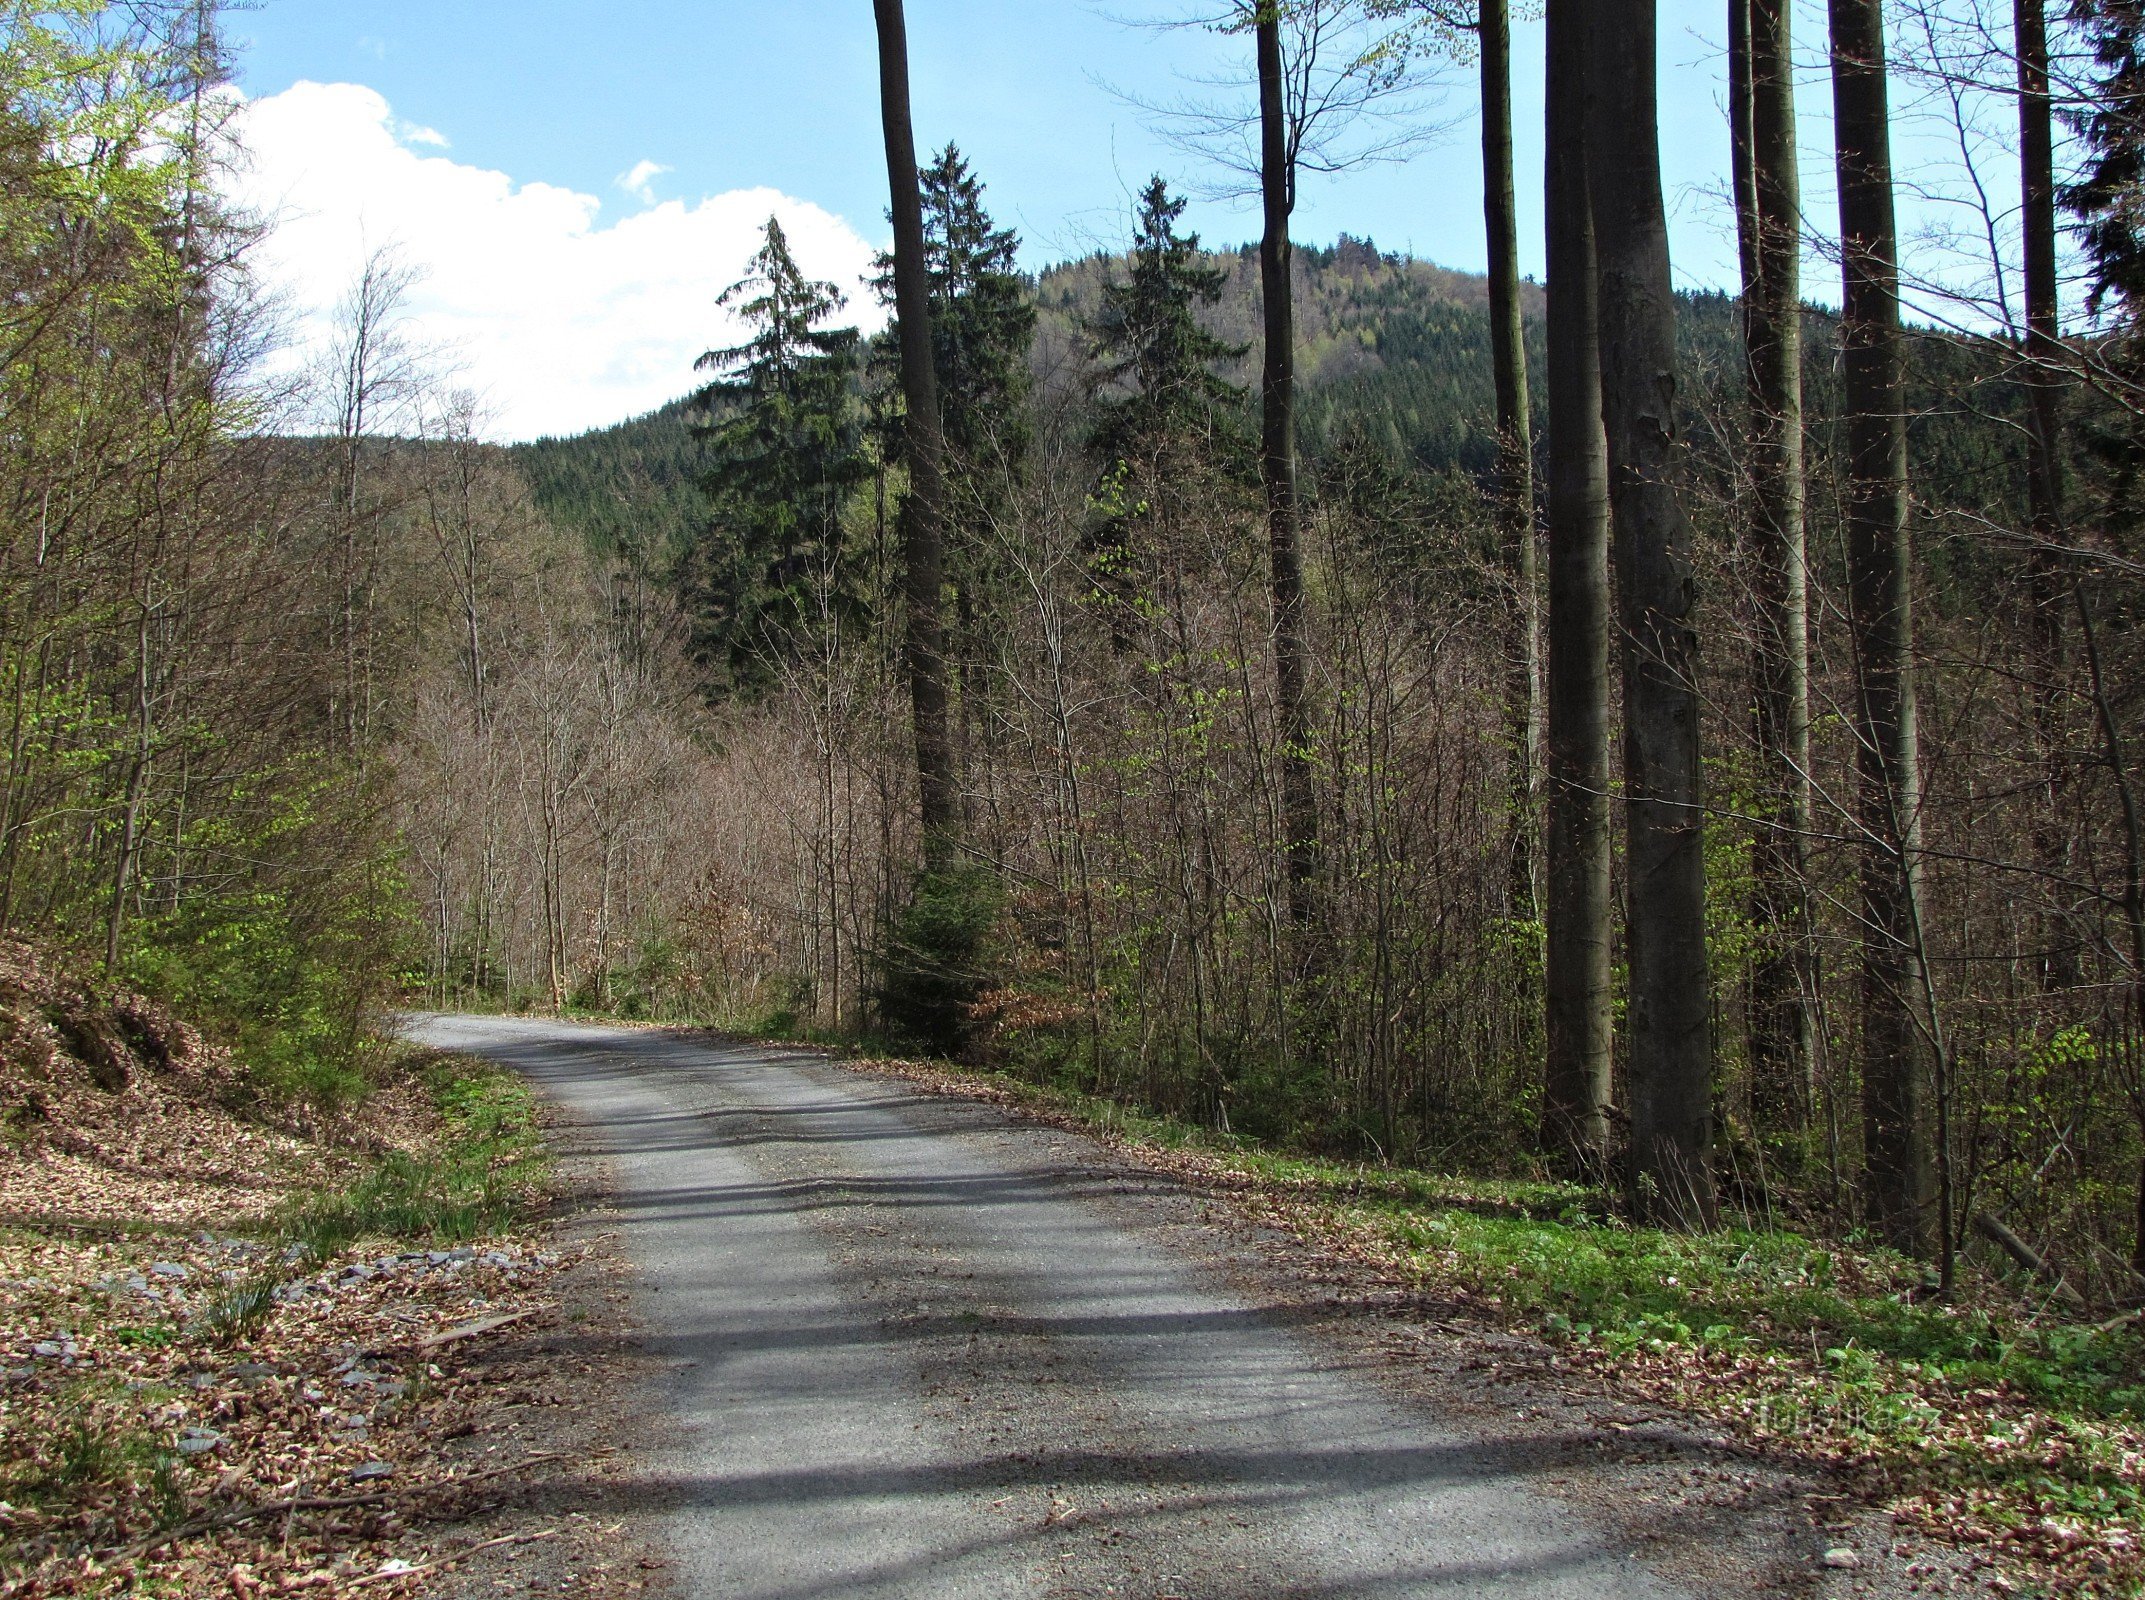 descenso de Maliník, frente a Hrubý kámen